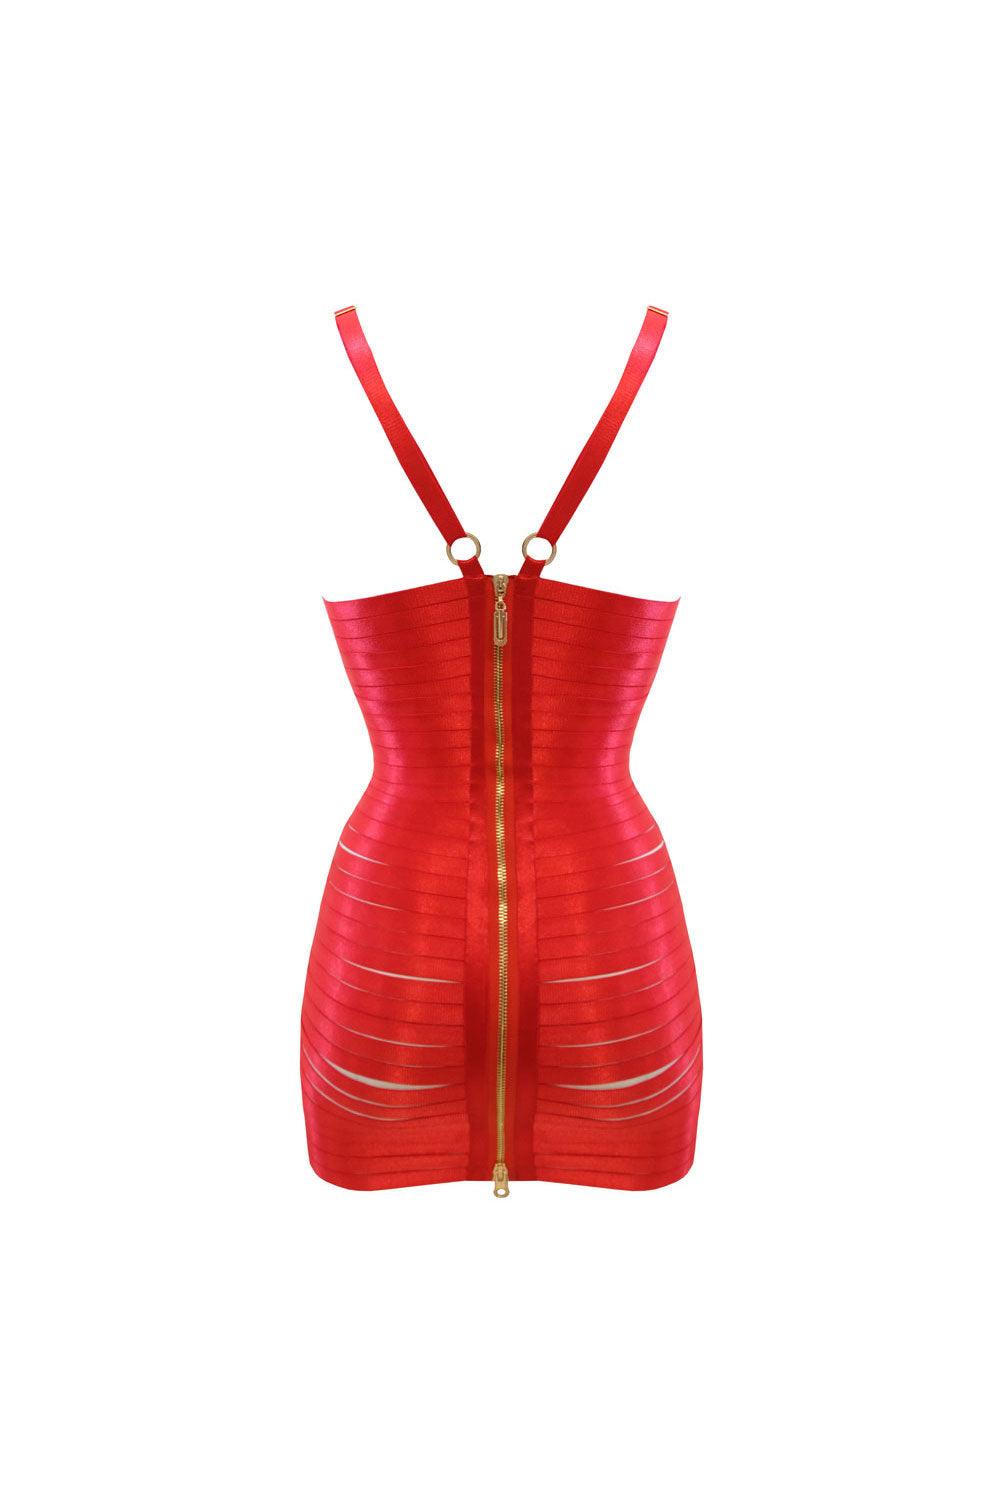 Maura red dress - Bondage dress by Keosme. Shop on yesUndress